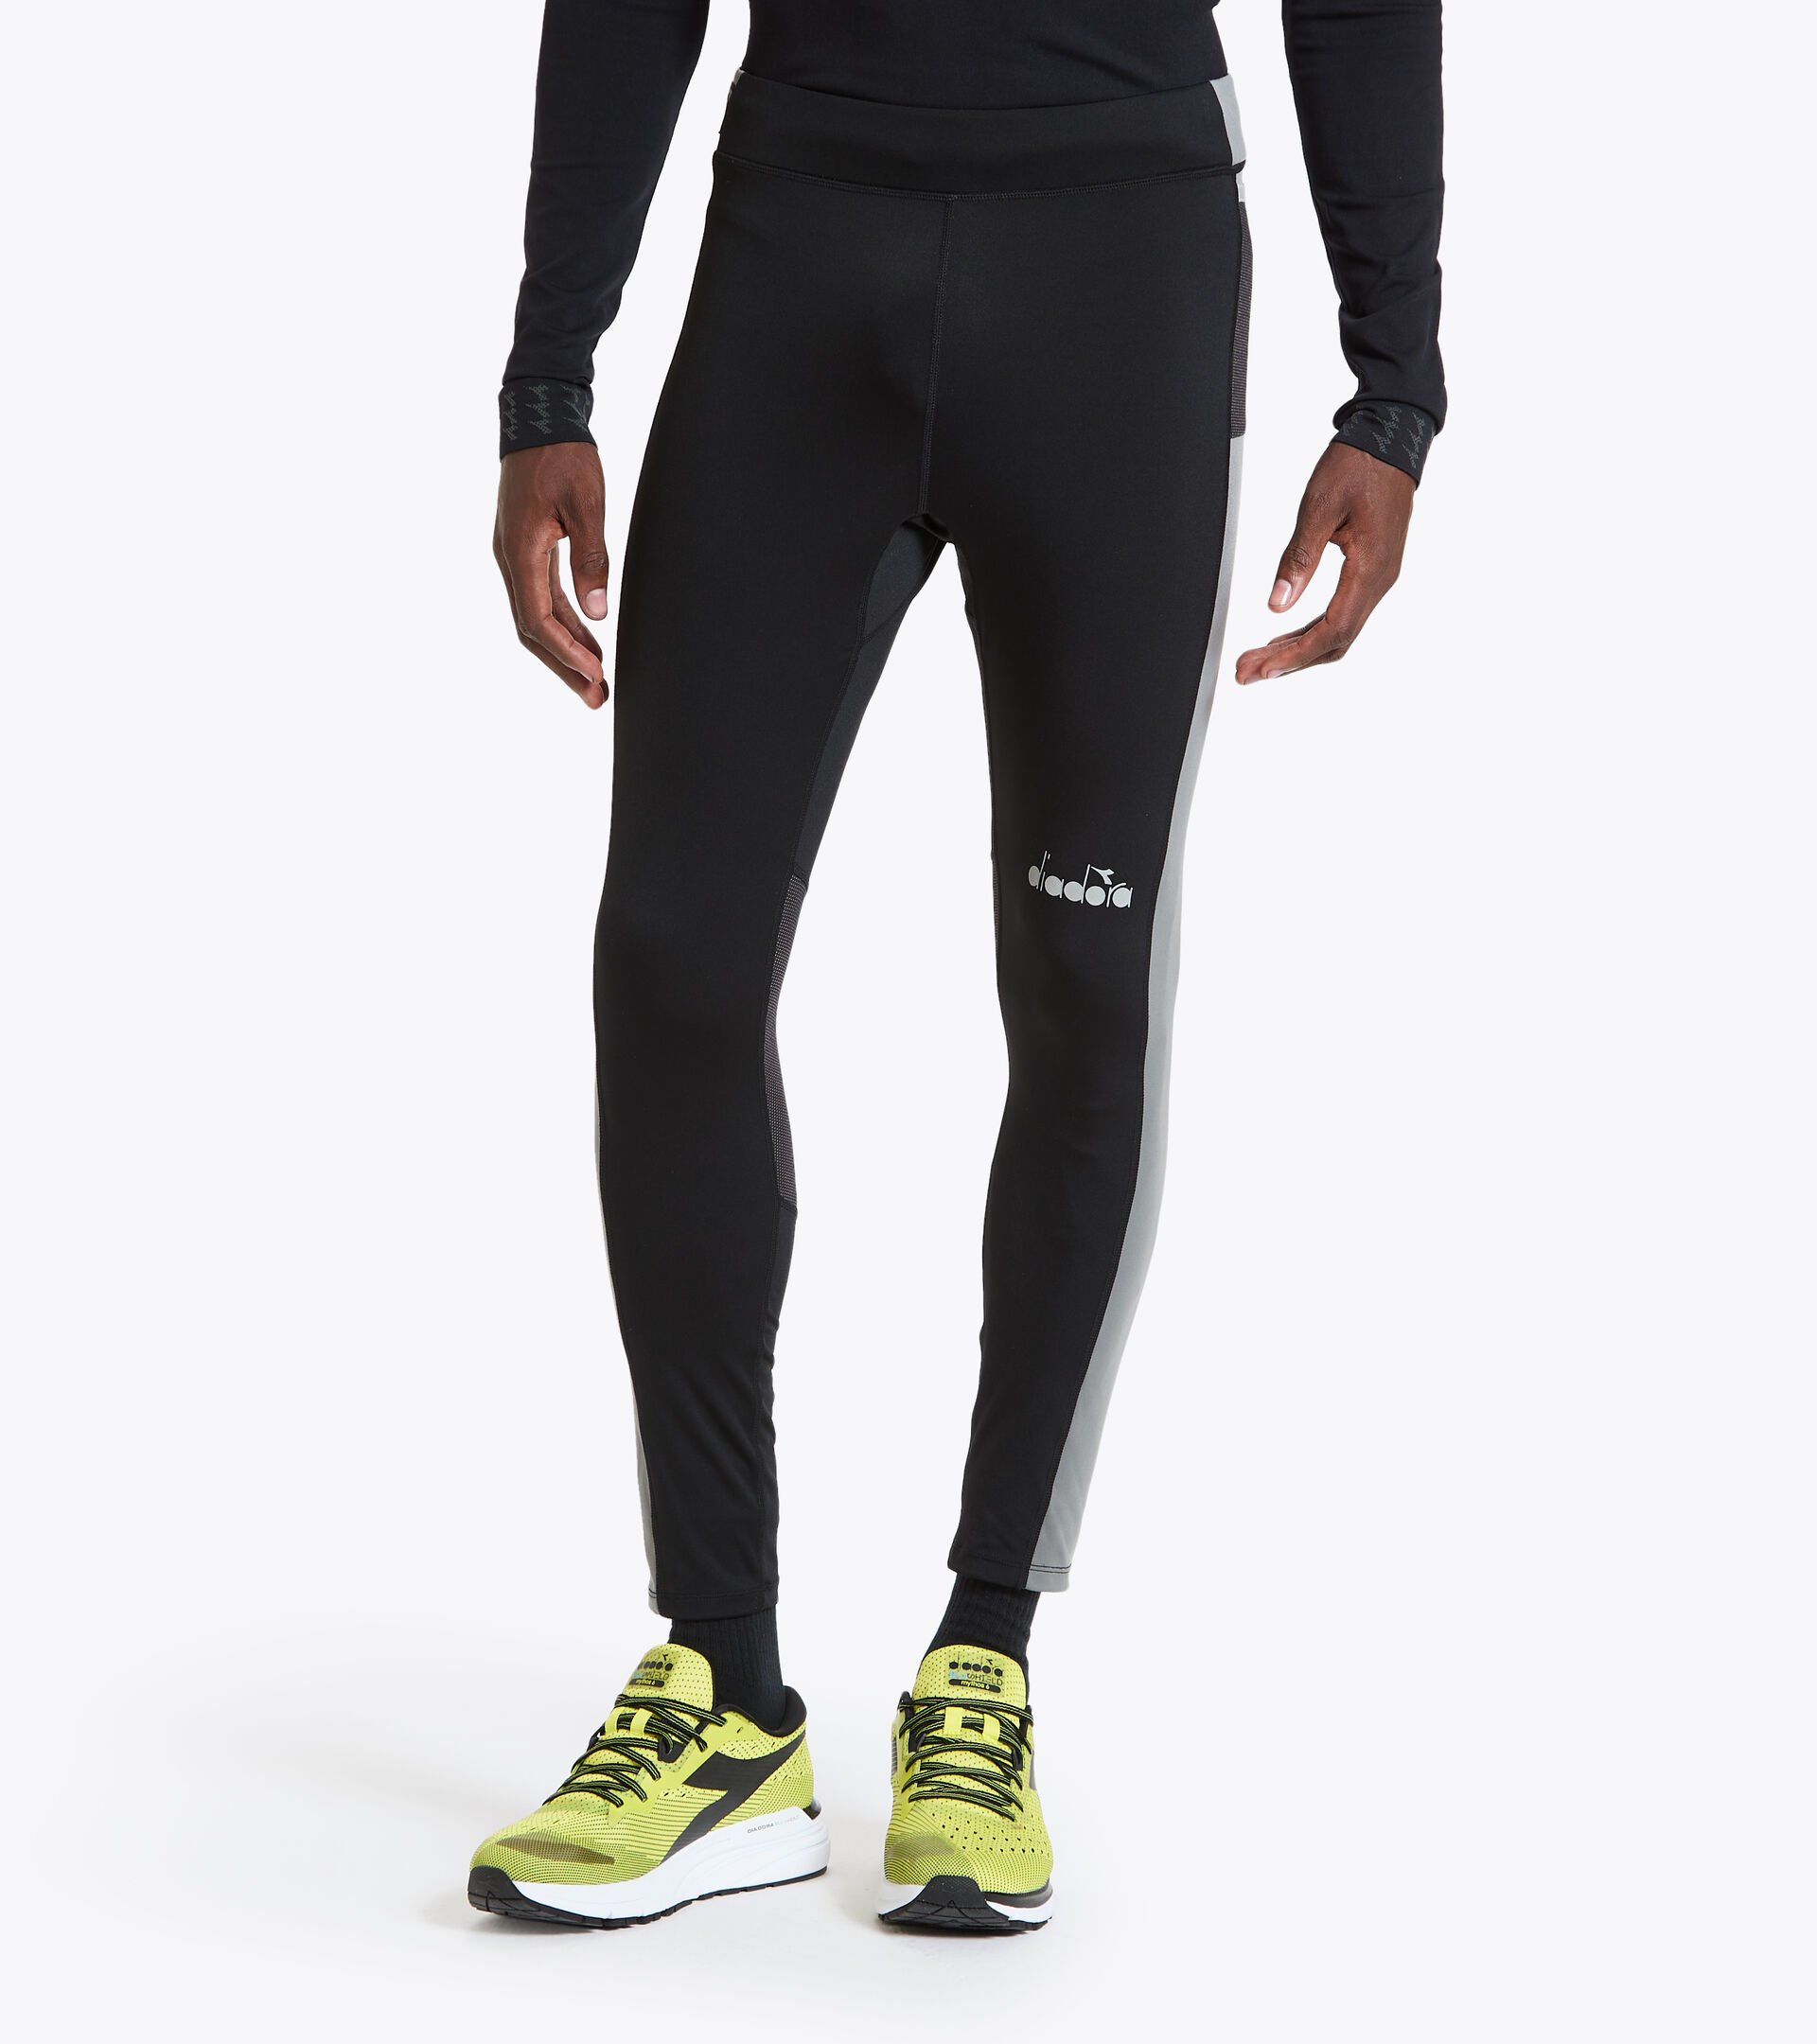 RUNNING TIGHTS Running leggings - - Online Store